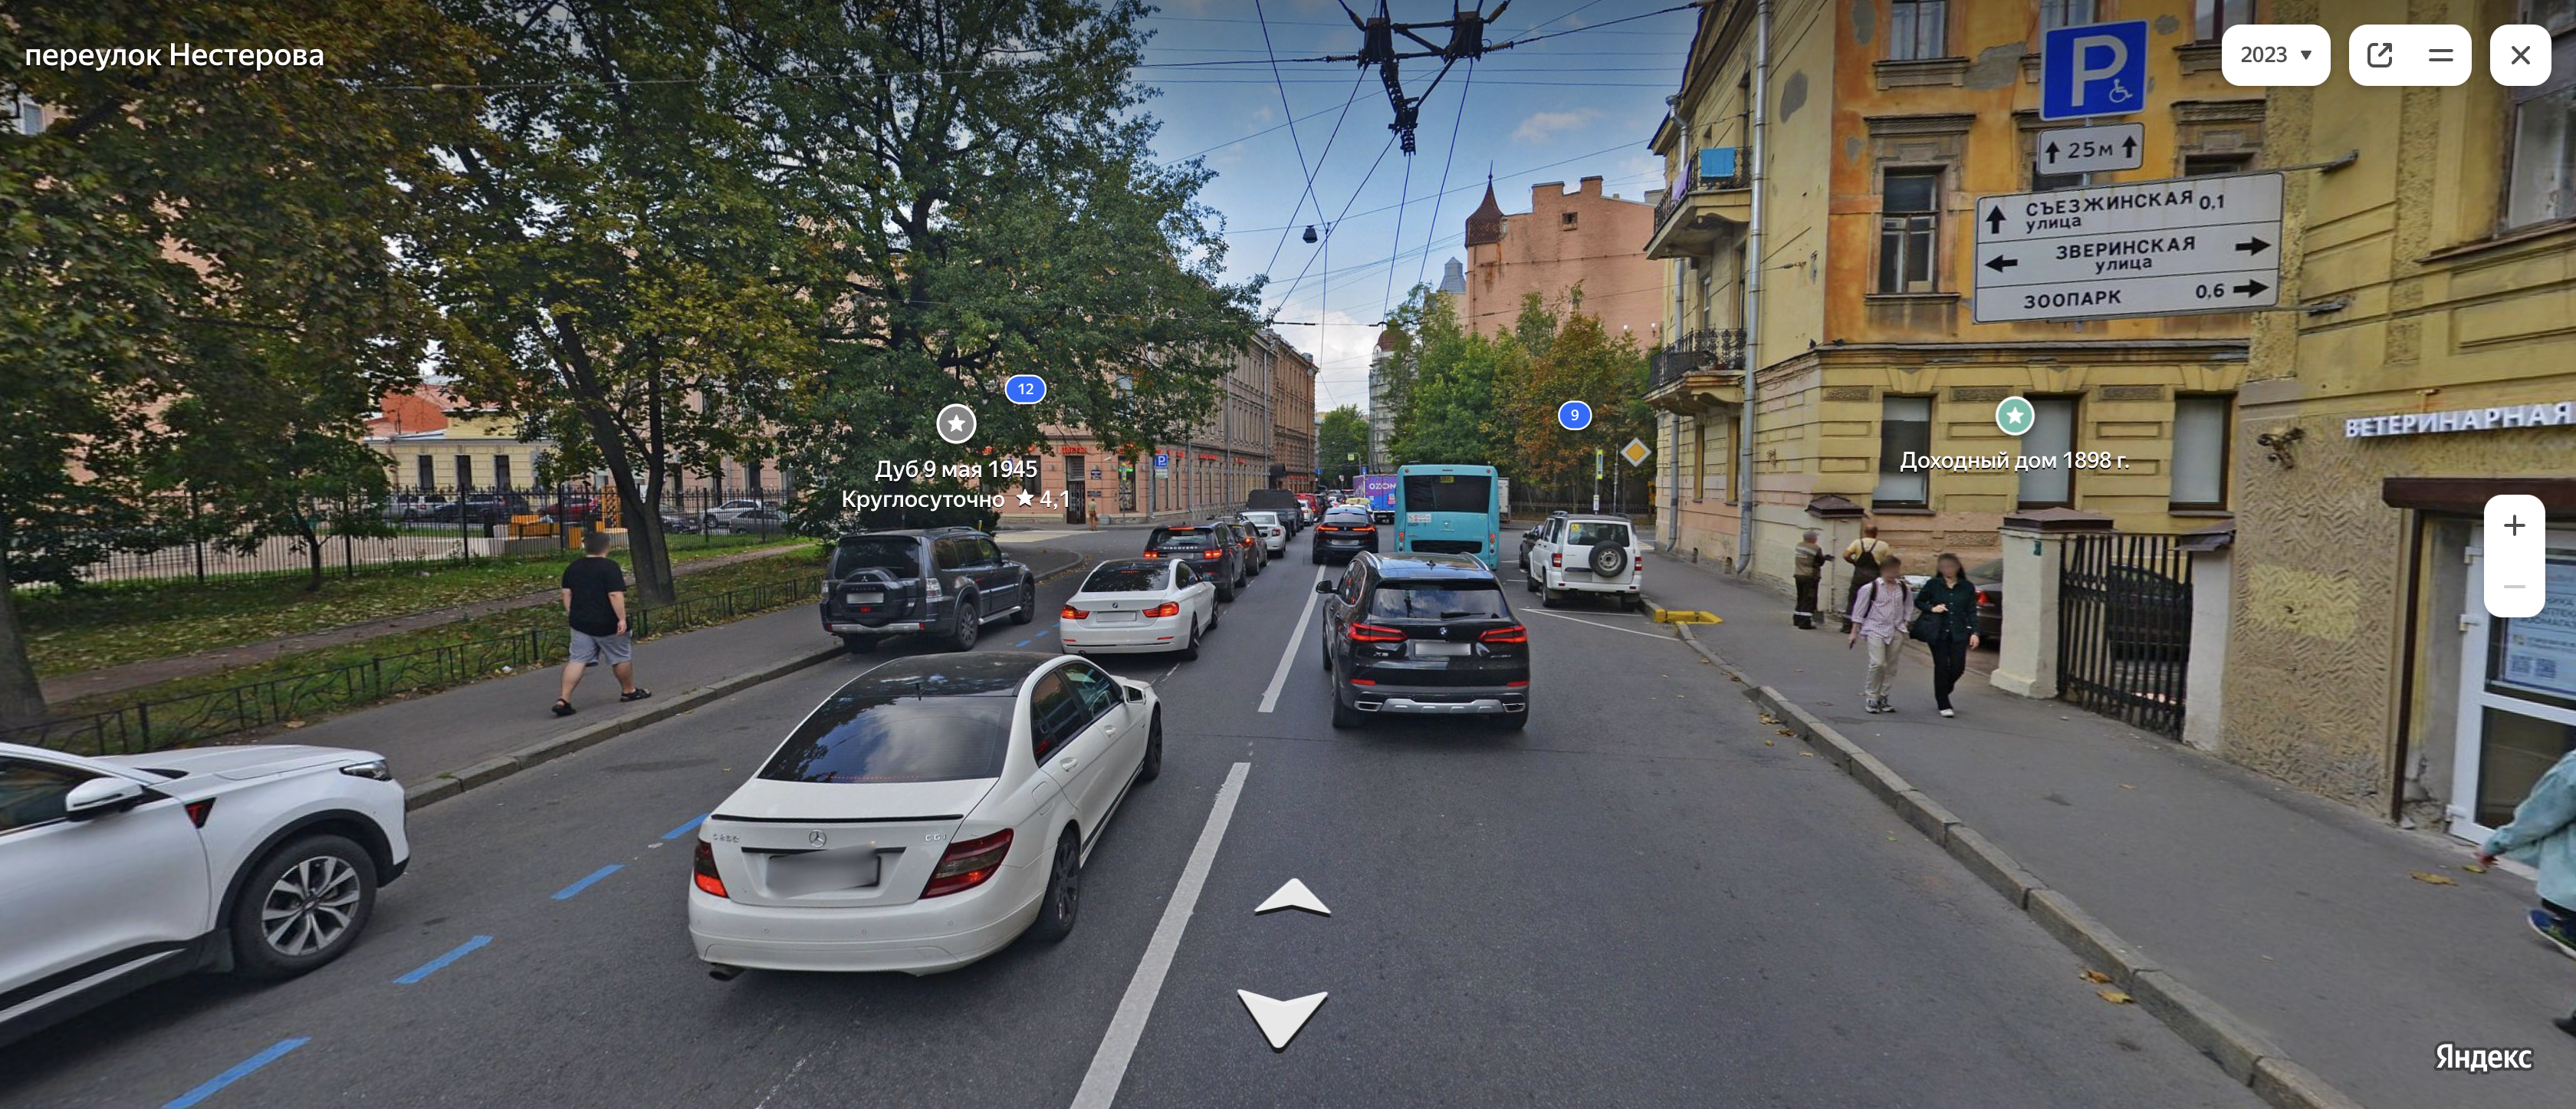 На переулке Нестерова припаркованные авто перед перекрестком ухудшают обзор